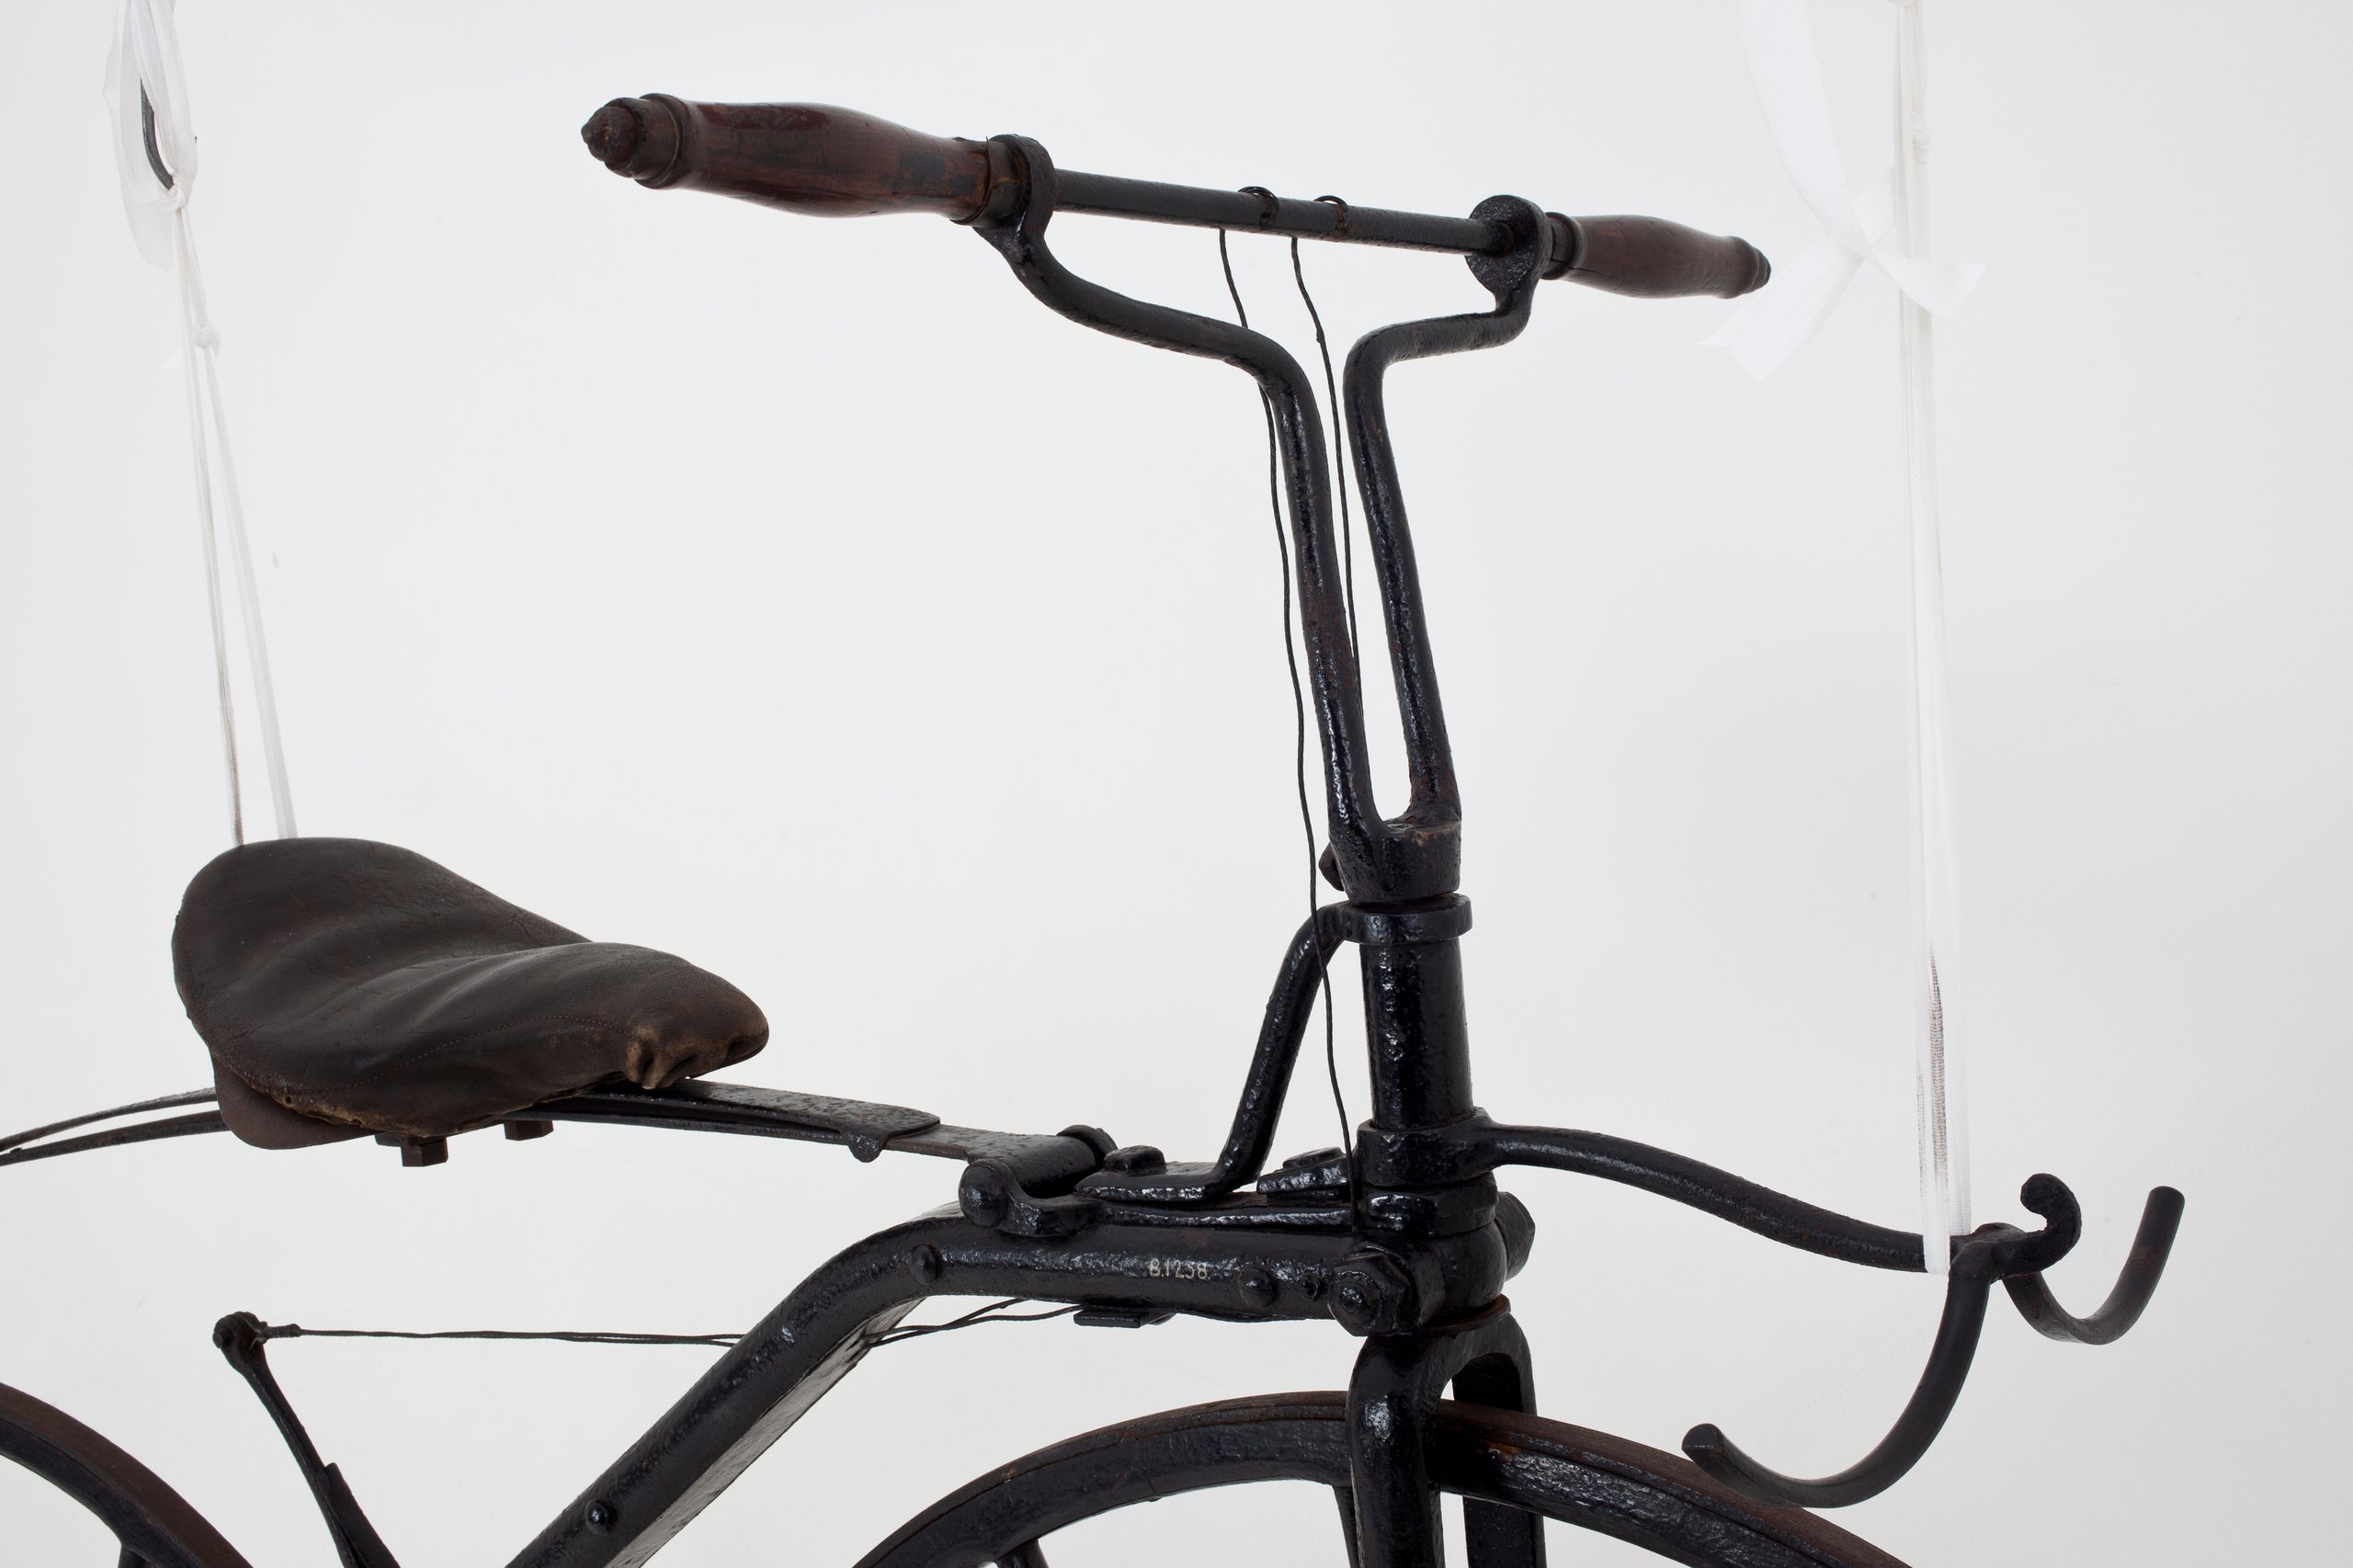 Michaux-type Velocipede boneshaker bicycle